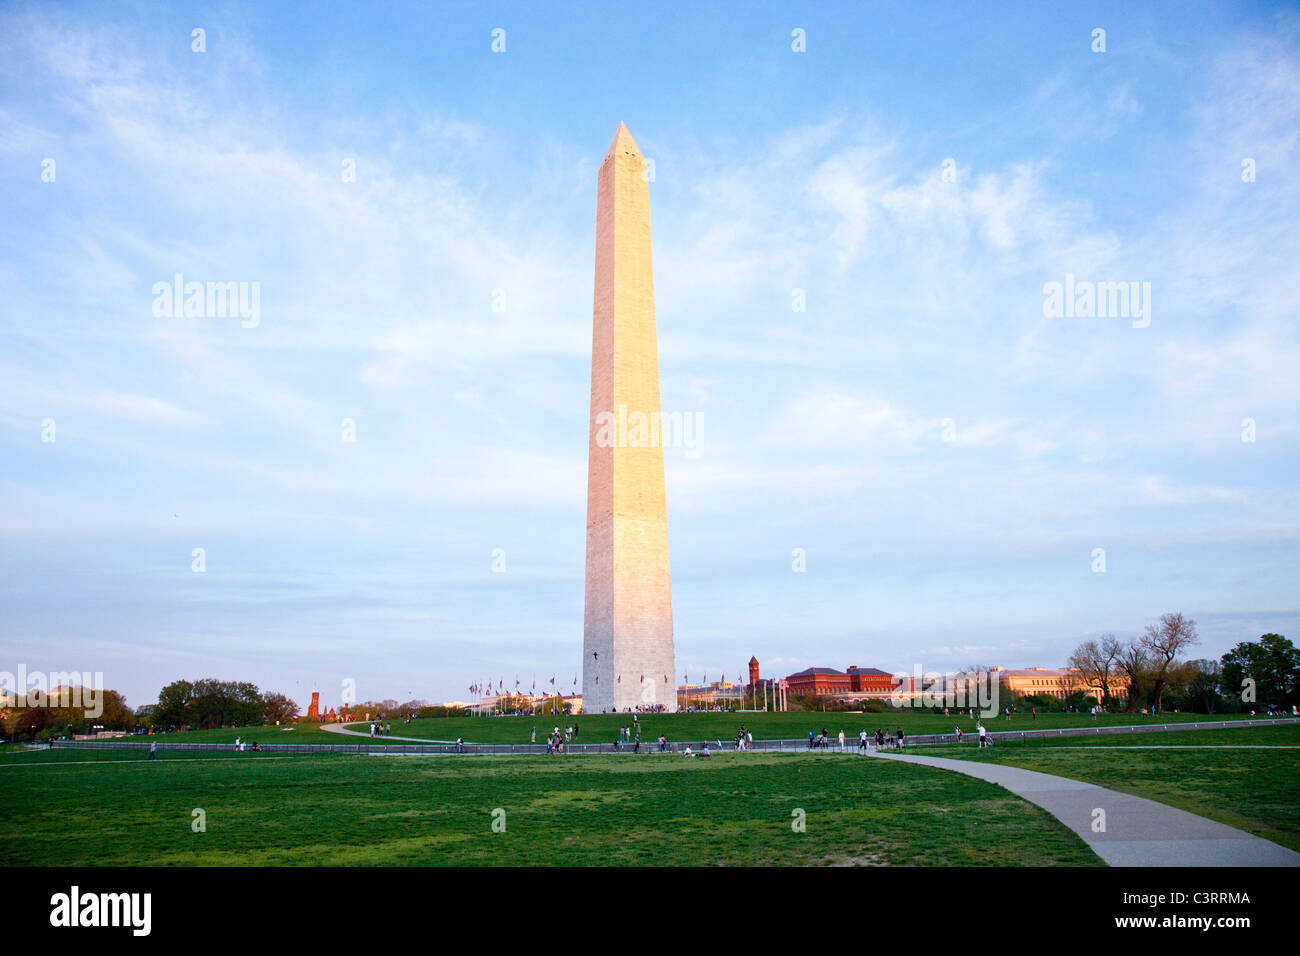 Washington Monument, Washington DC Stock Photo